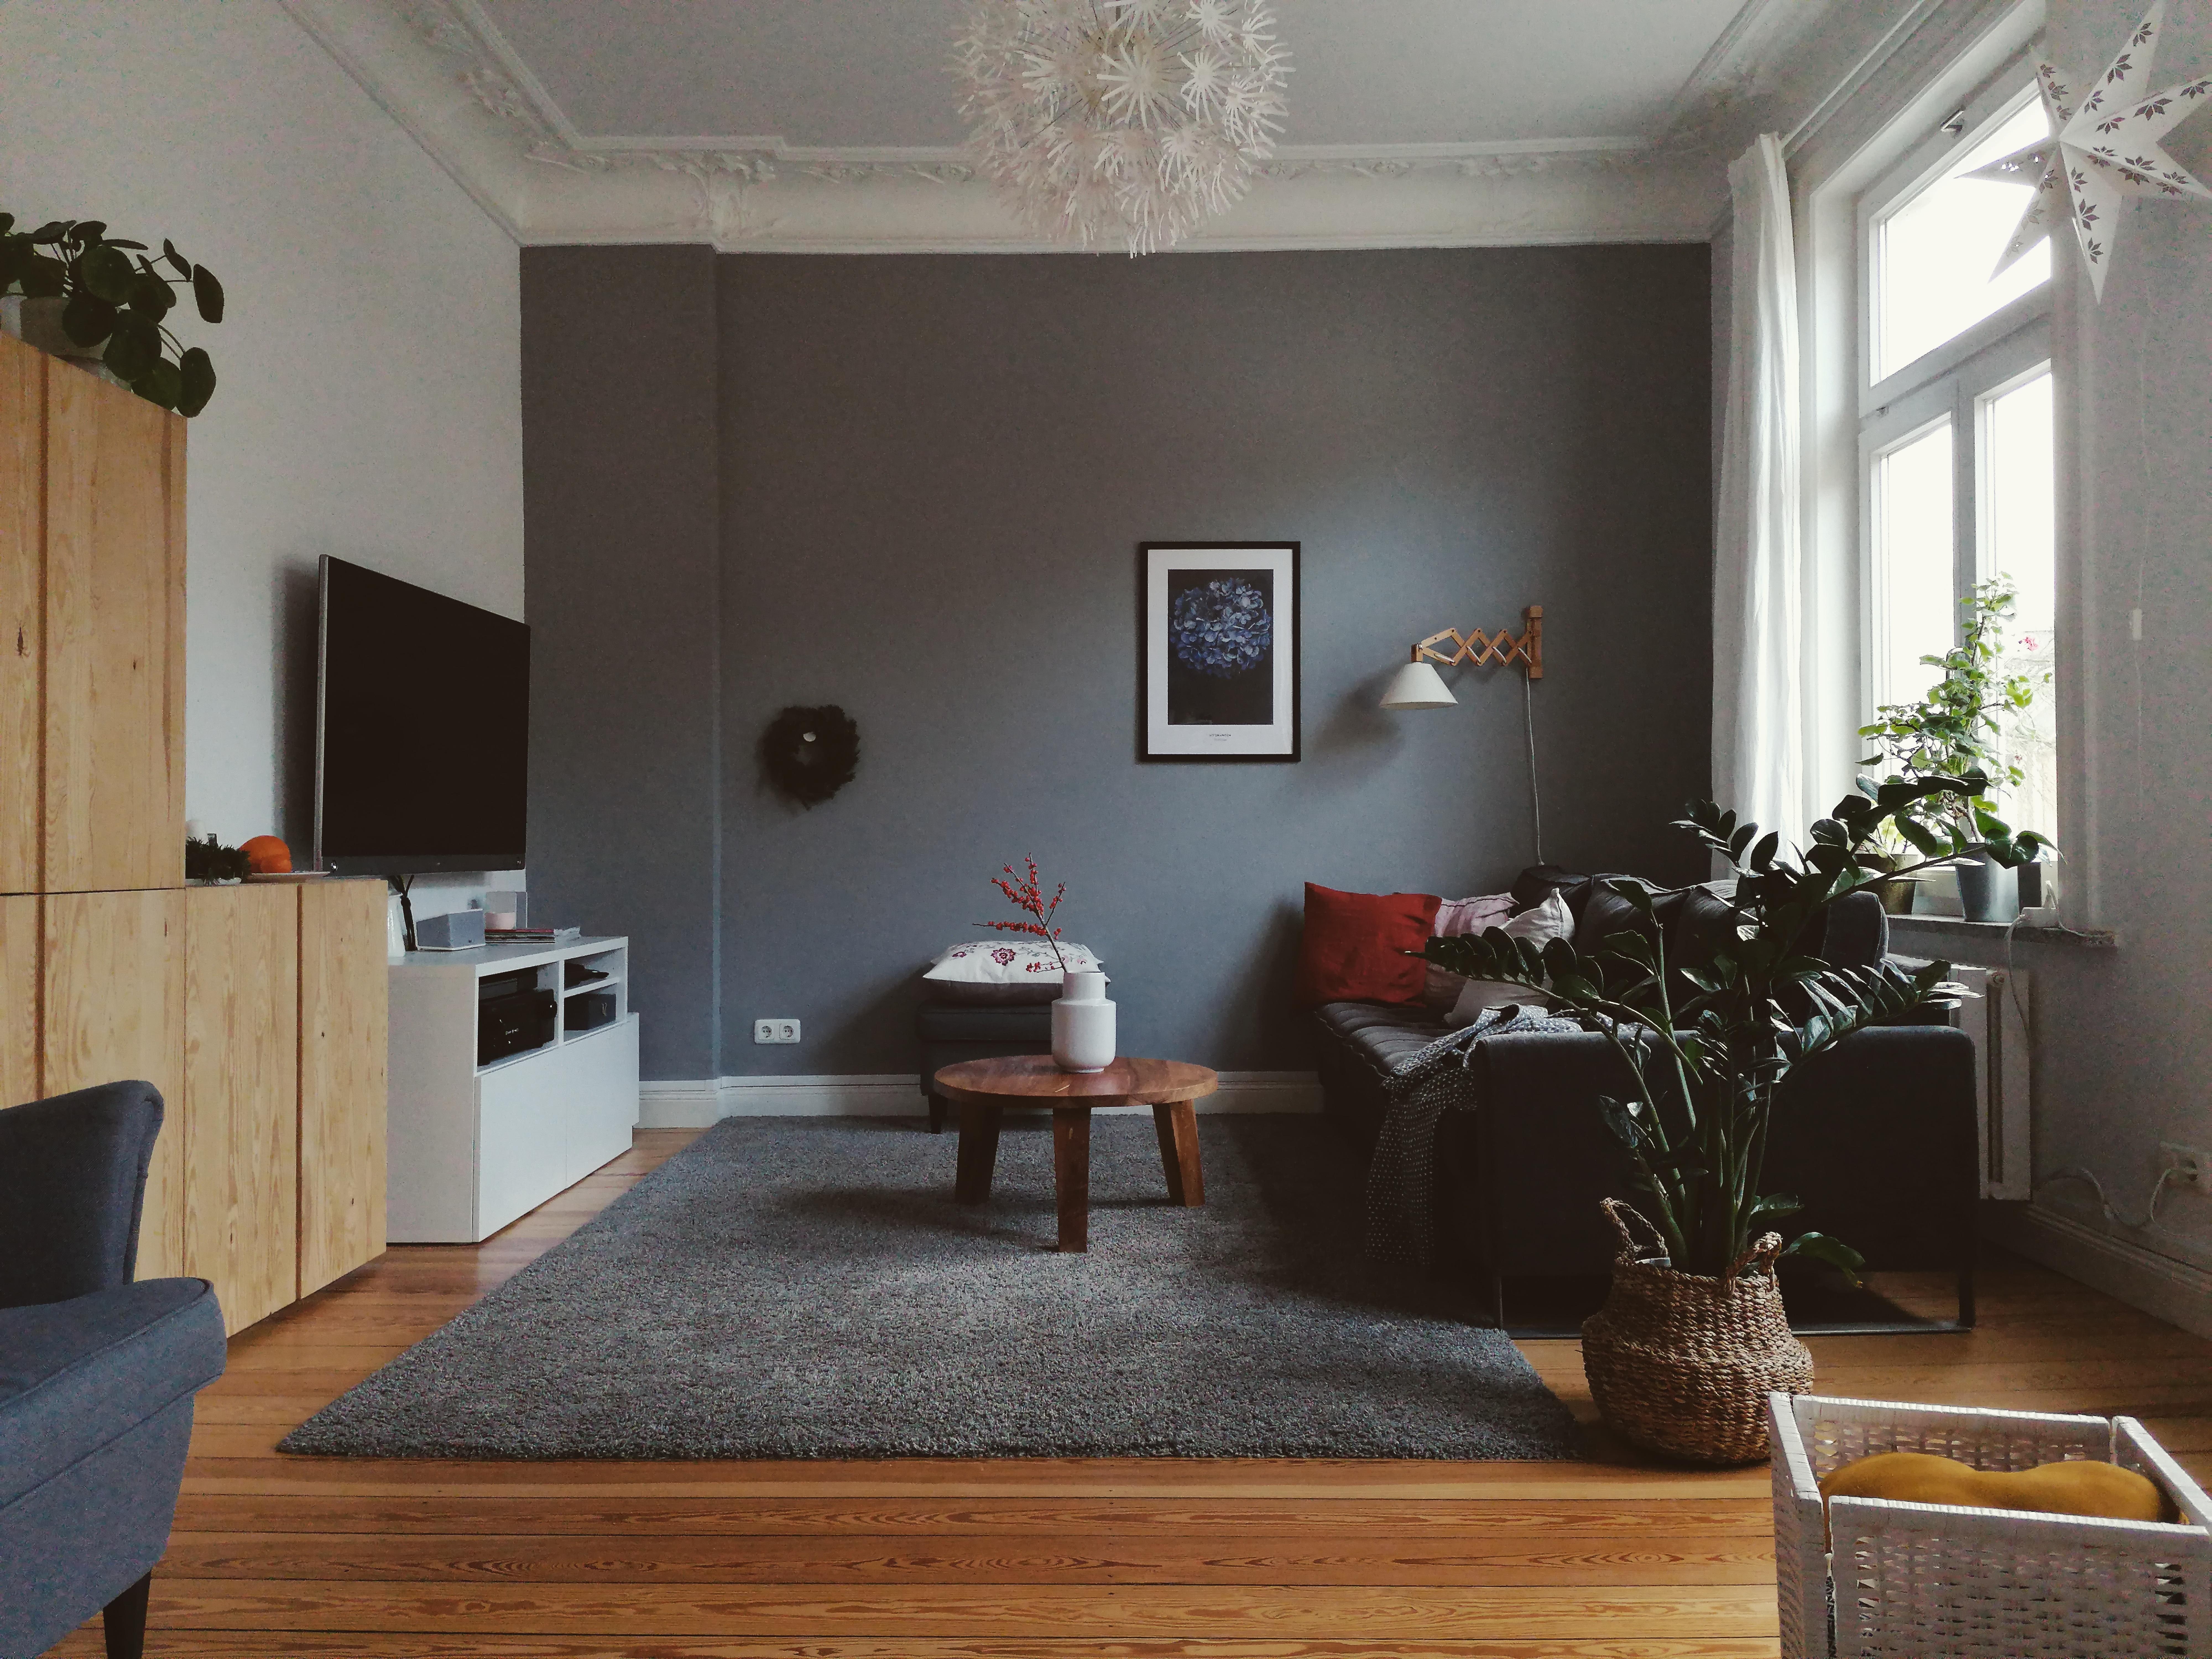 Wohnzimmerview

#wohnzimmer #weihnachten #couch #altbau #altbauliebe 